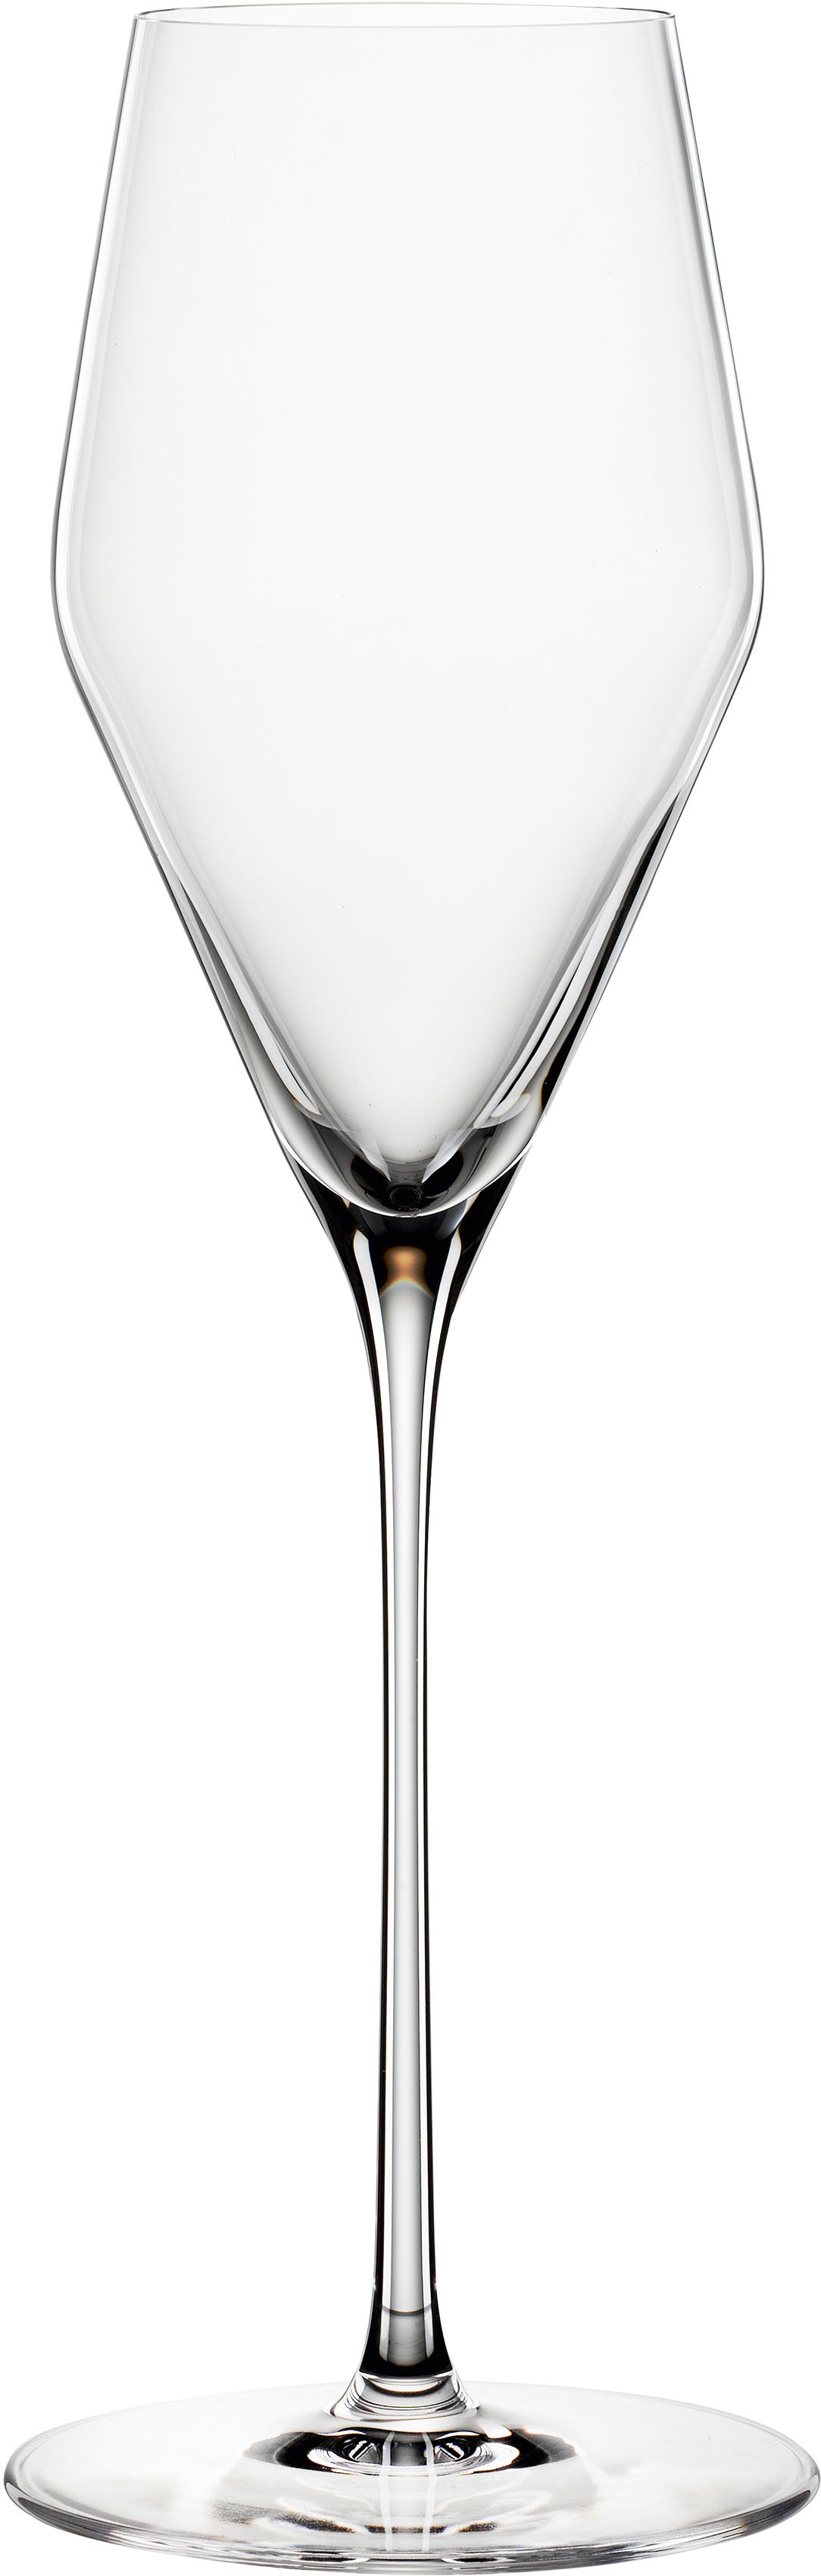 SPIEGELAU Champagnerglas Definition, (Set, 2 tlg.), 250 ml farblos Kristallgläser Gläser Glaswaren Haushaltswaren